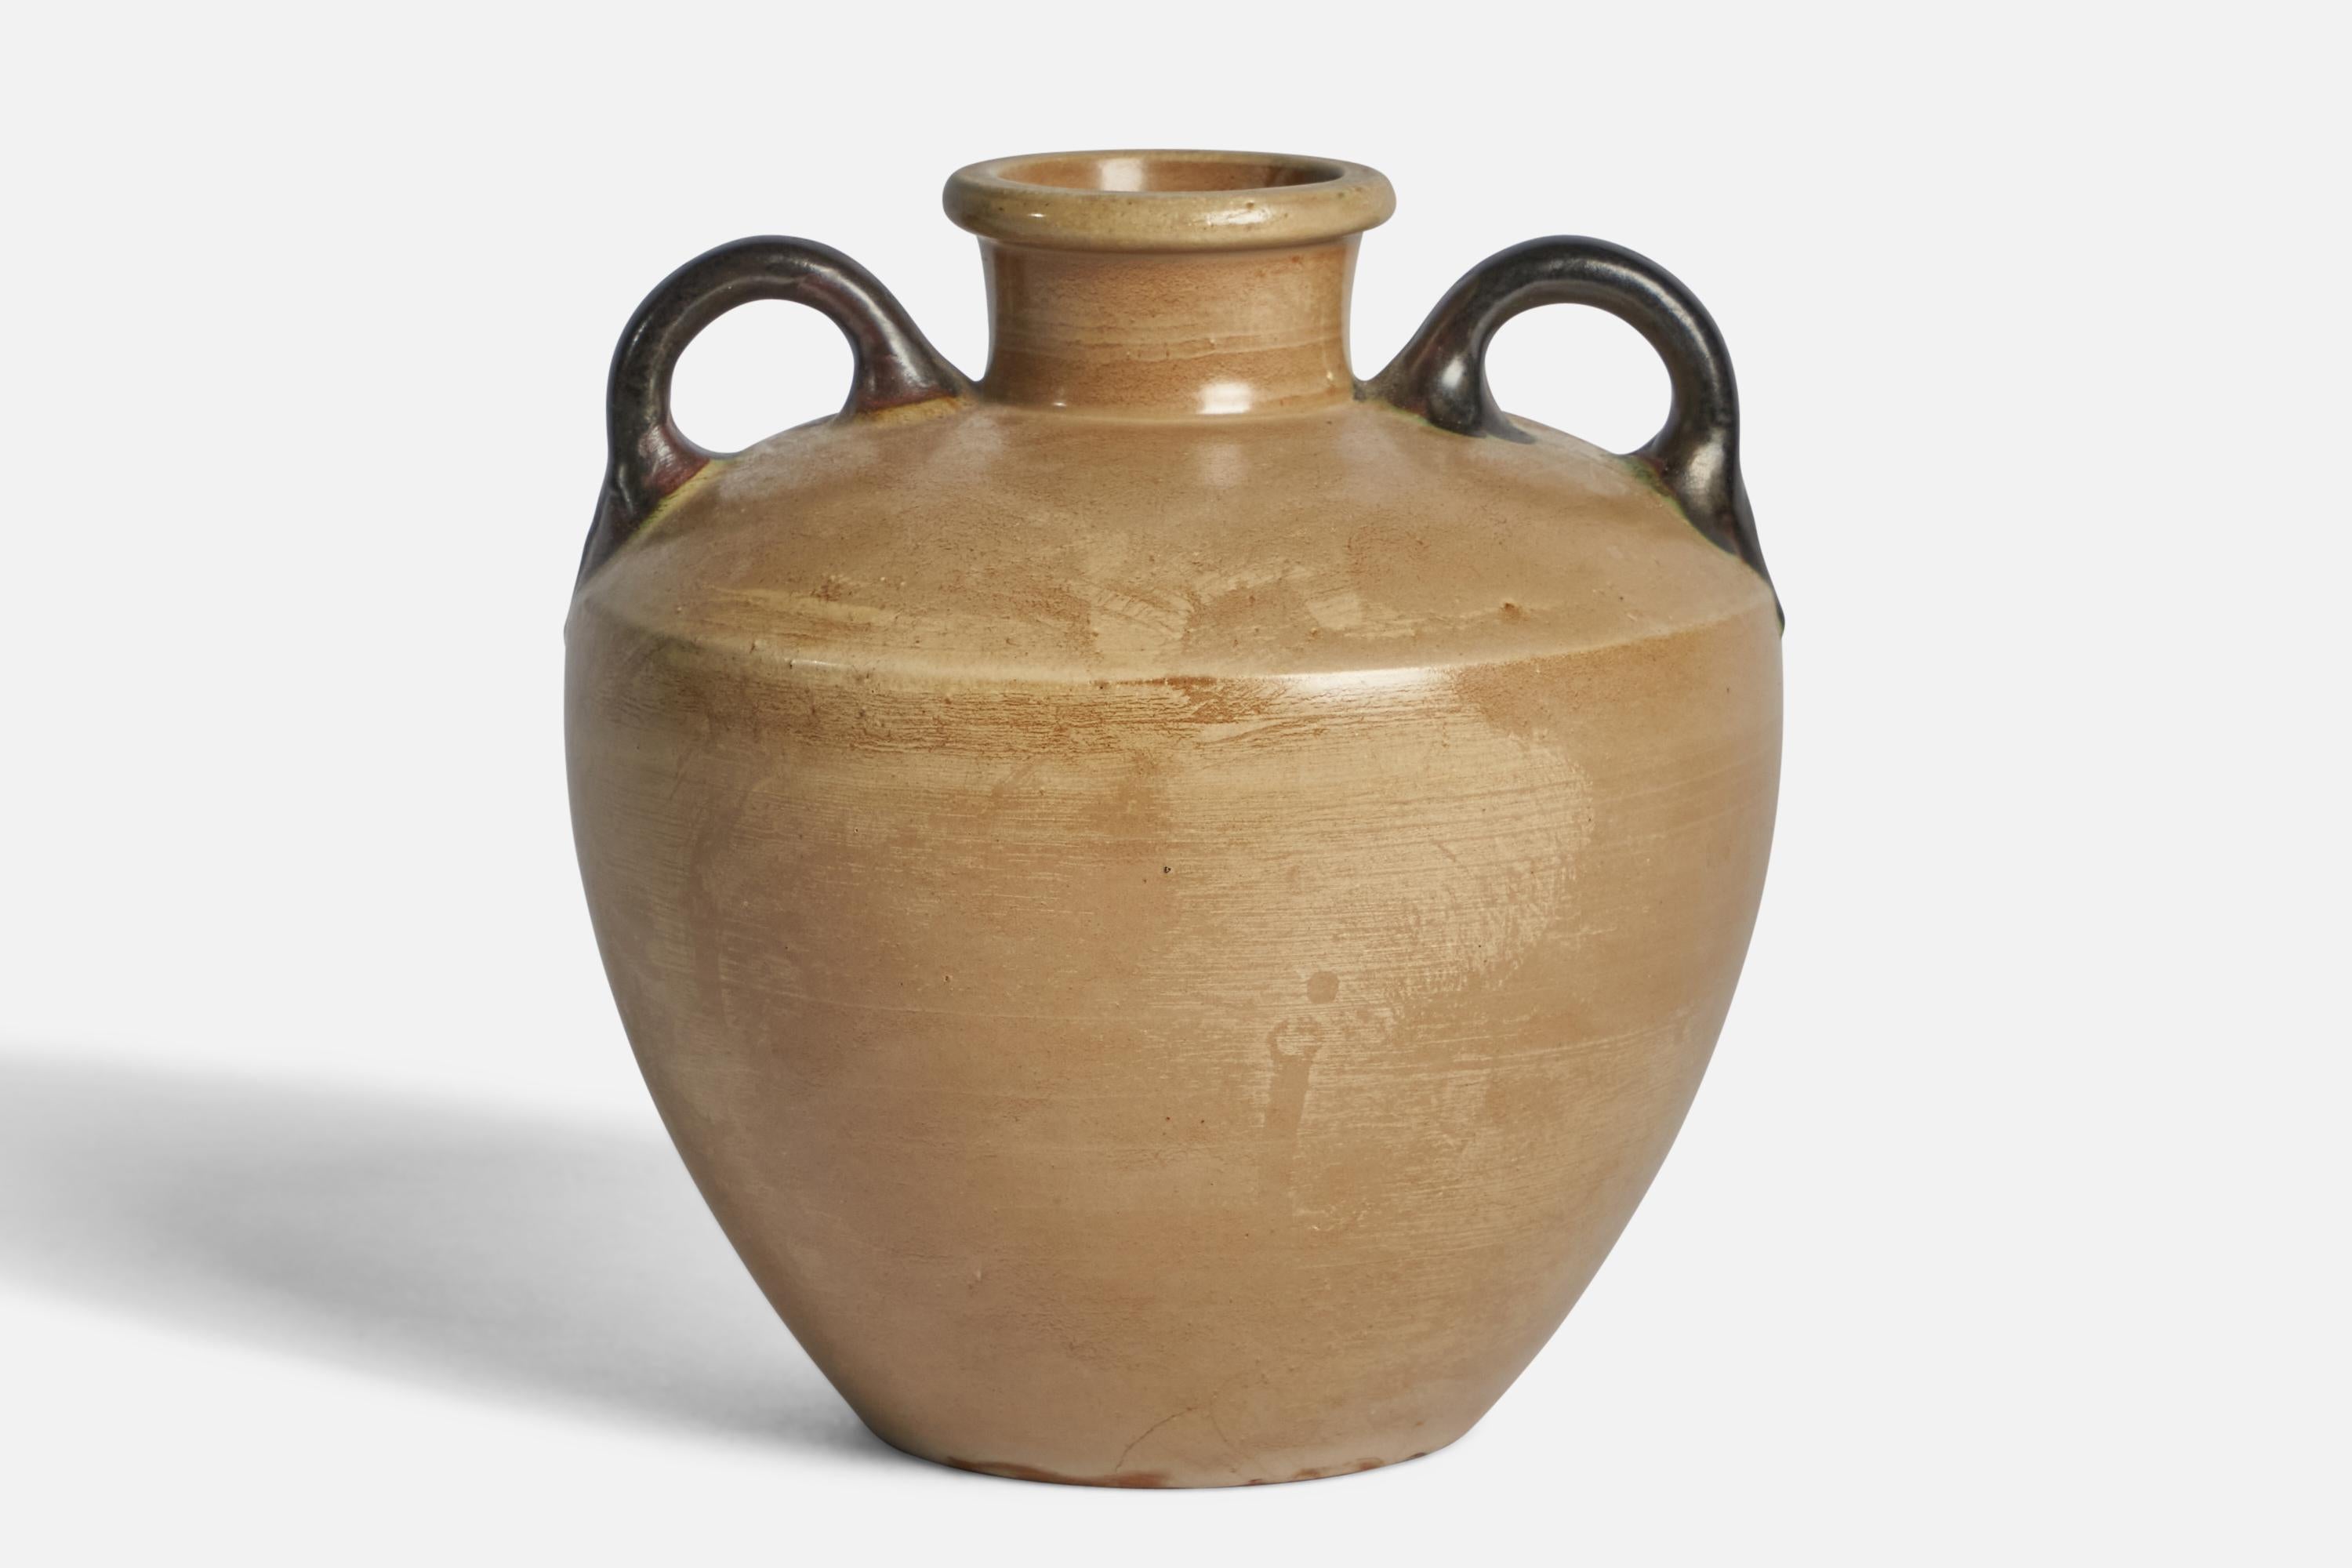 Vase en grès émaillé beige et noir conçu et produit par Höganäs Keramik, Suède, vers les années 1940.